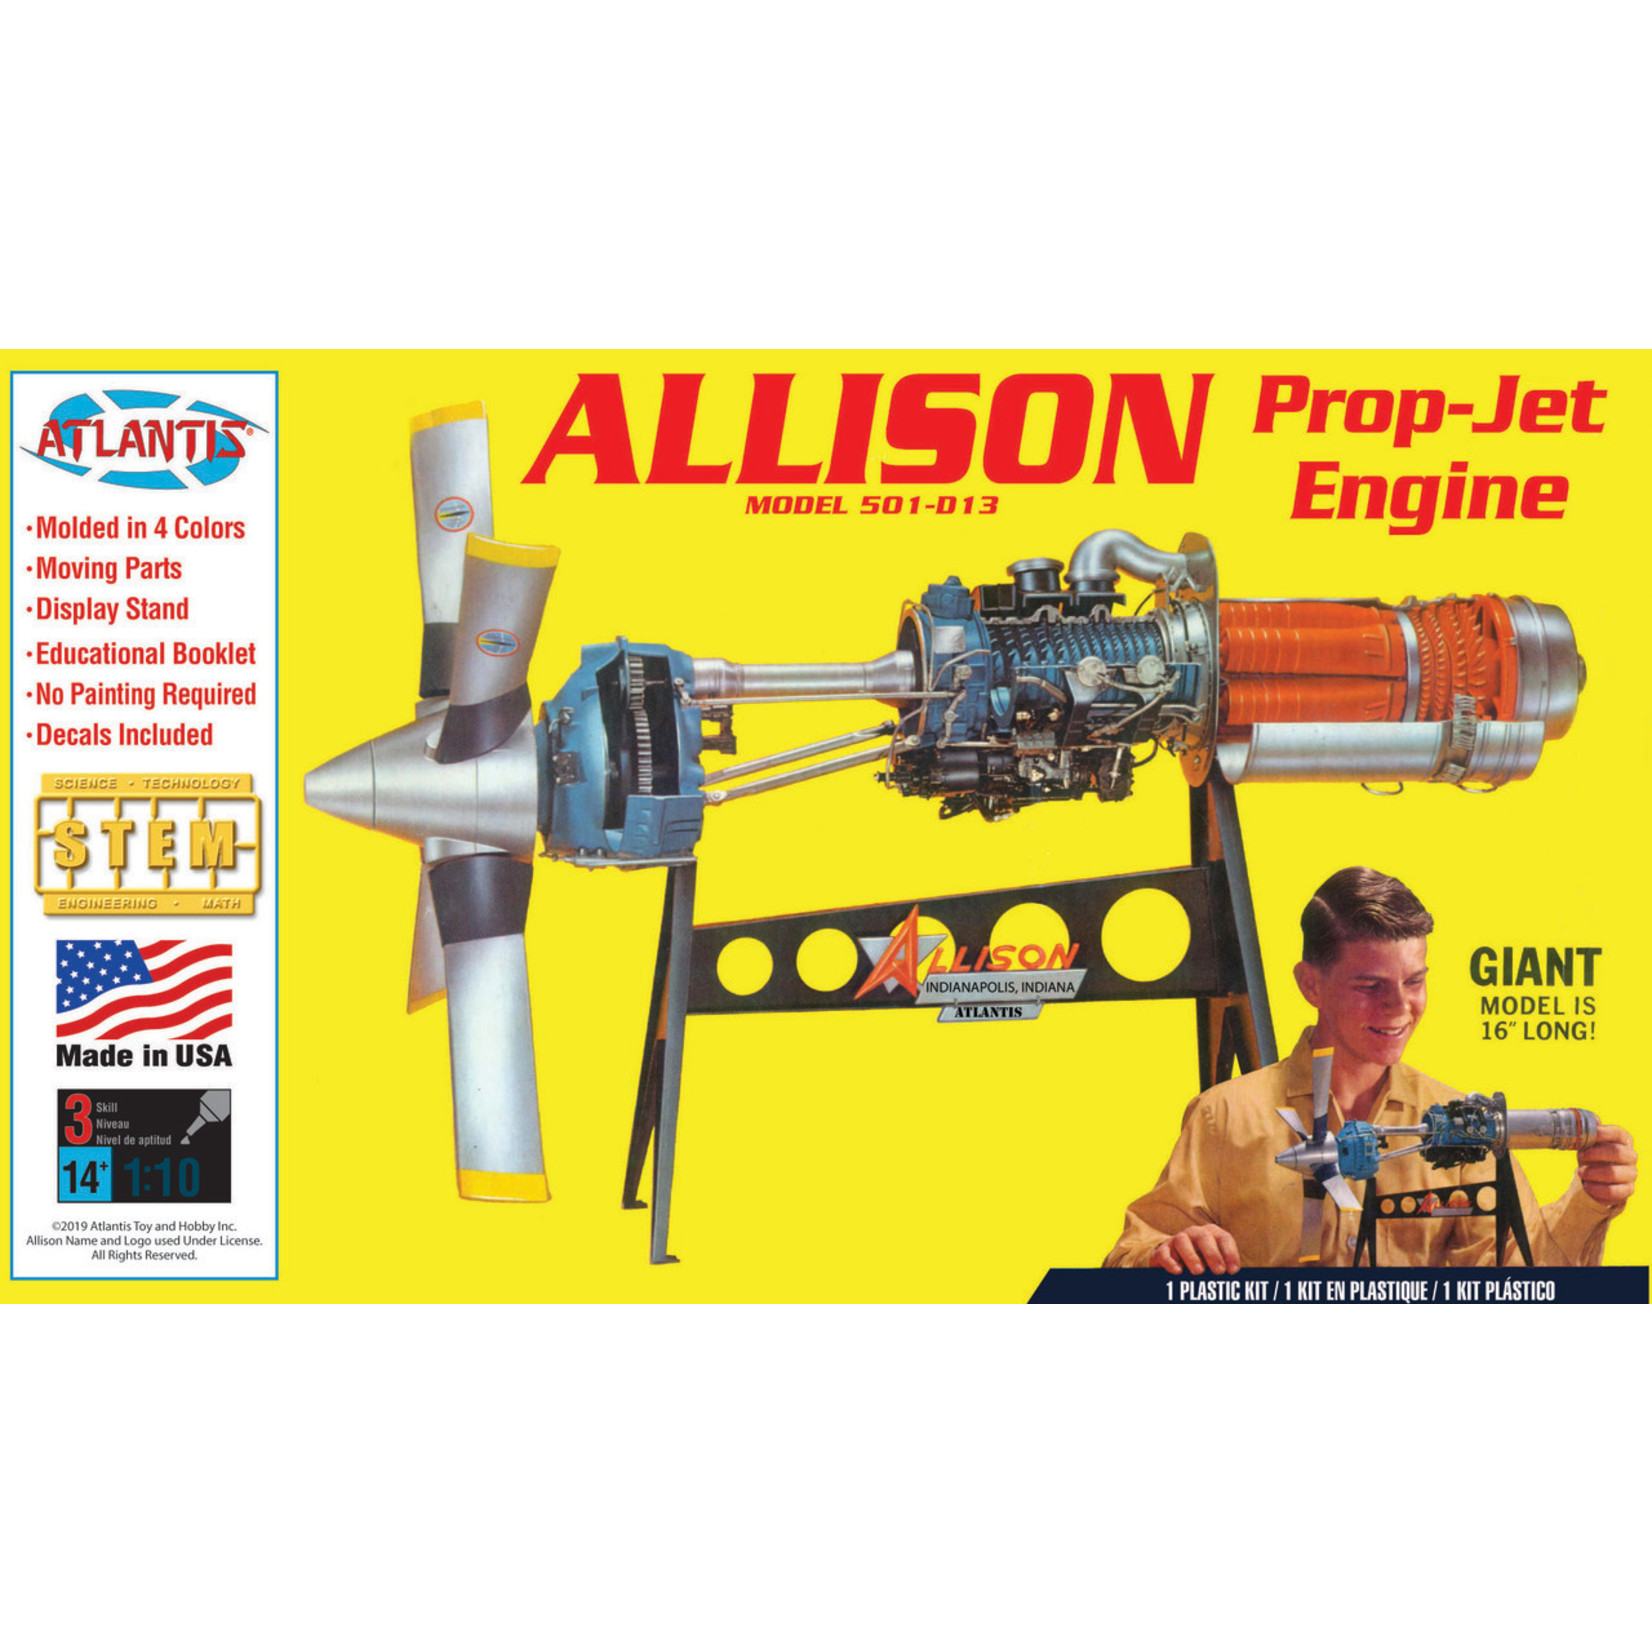 Atlantis Models AANH1551 - 1/10 Allison Model 501-D13 Prop-Jet Engine Plastic Model